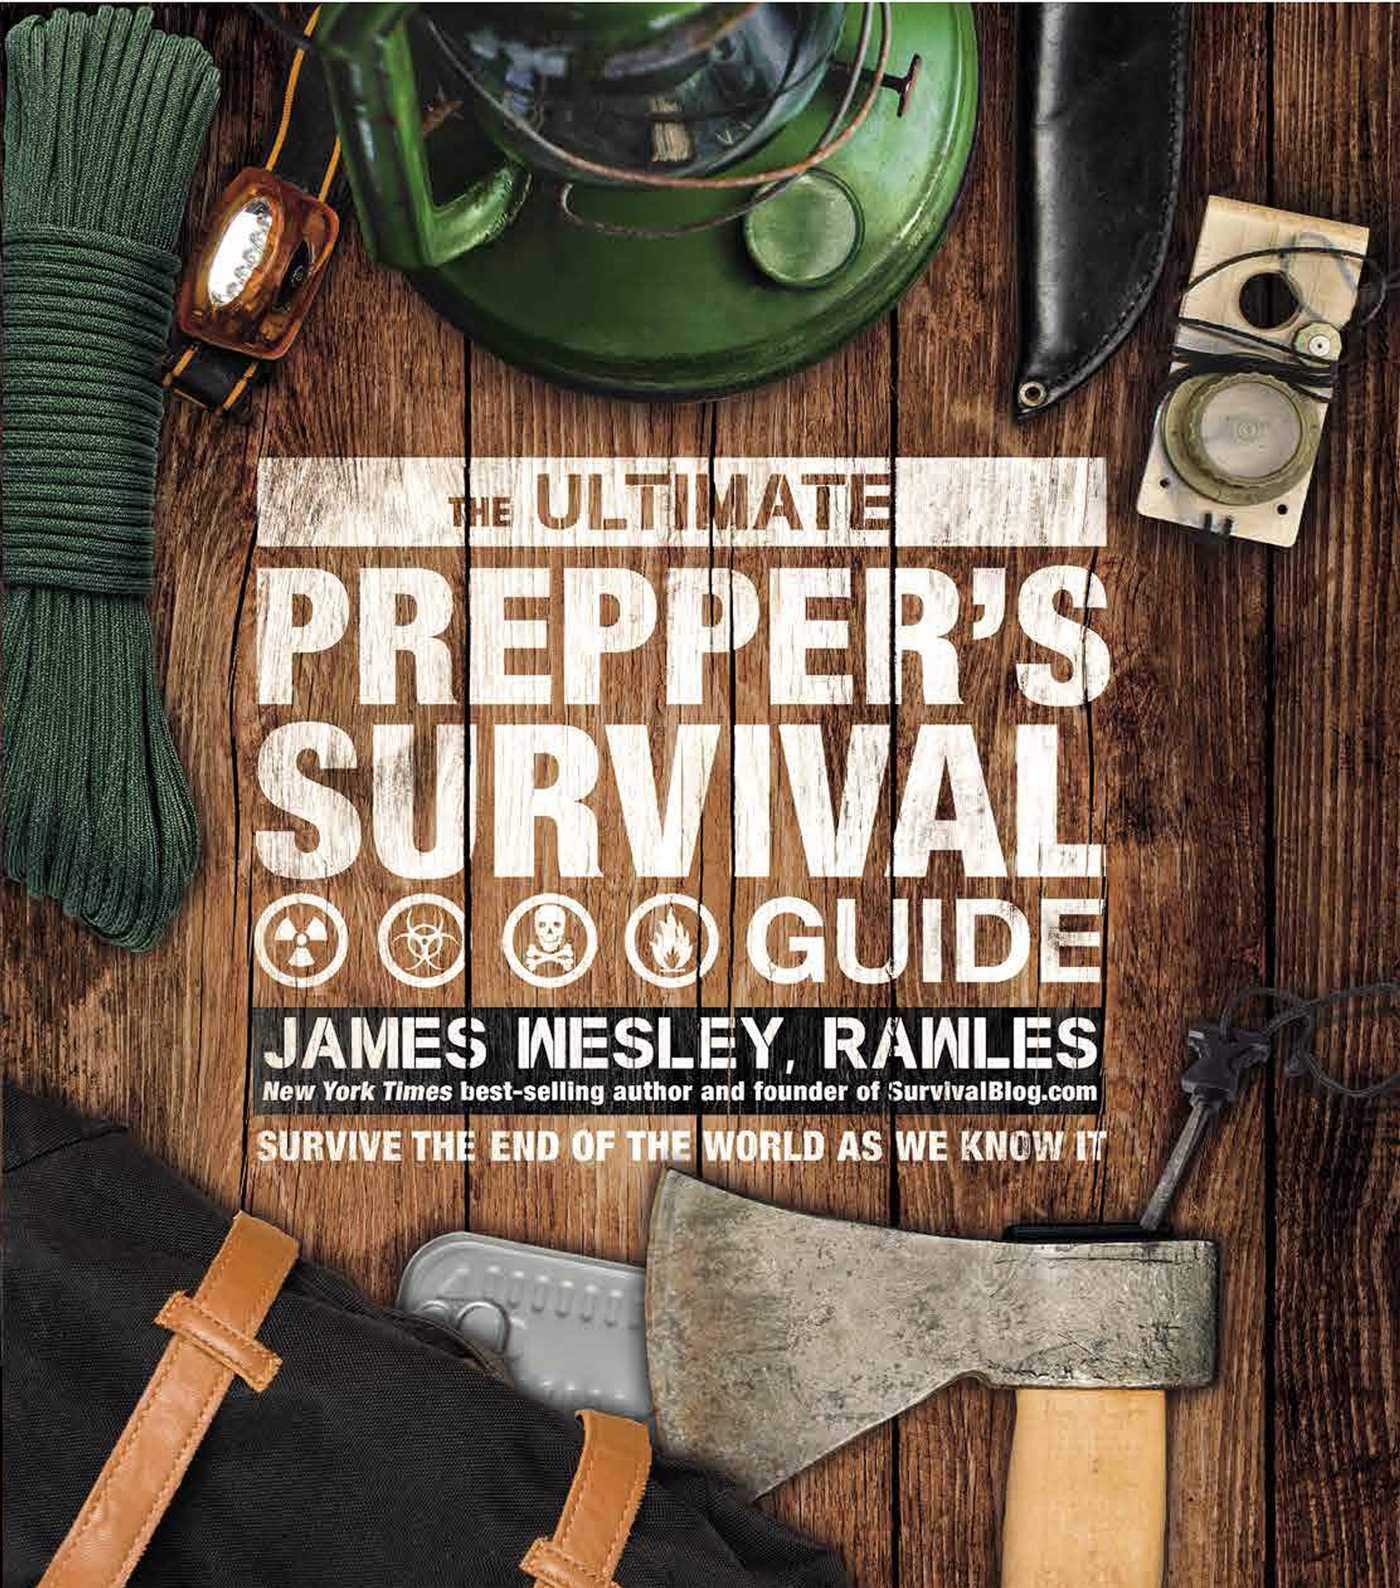 The Ultimate Prepper’s Survival Guide